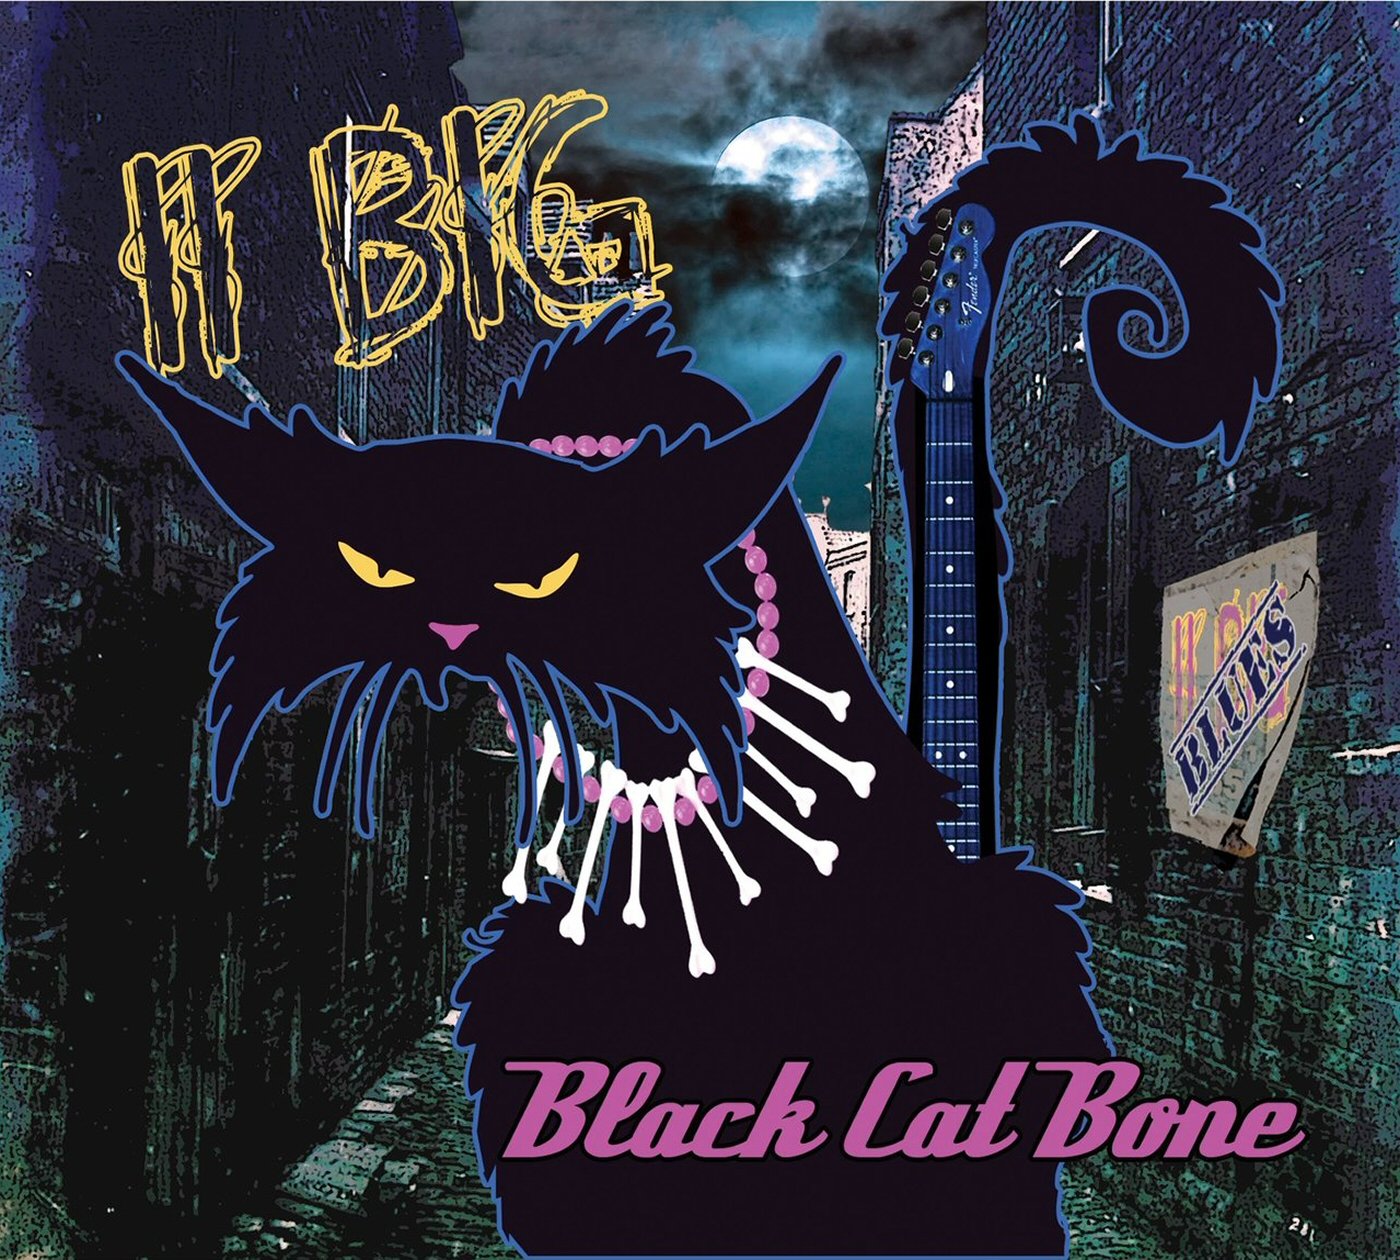 Black cat bone. Группа Black Cat Bones. Black Cats группа. Сообщество чёрный кот. Блюз черная кошка группа.